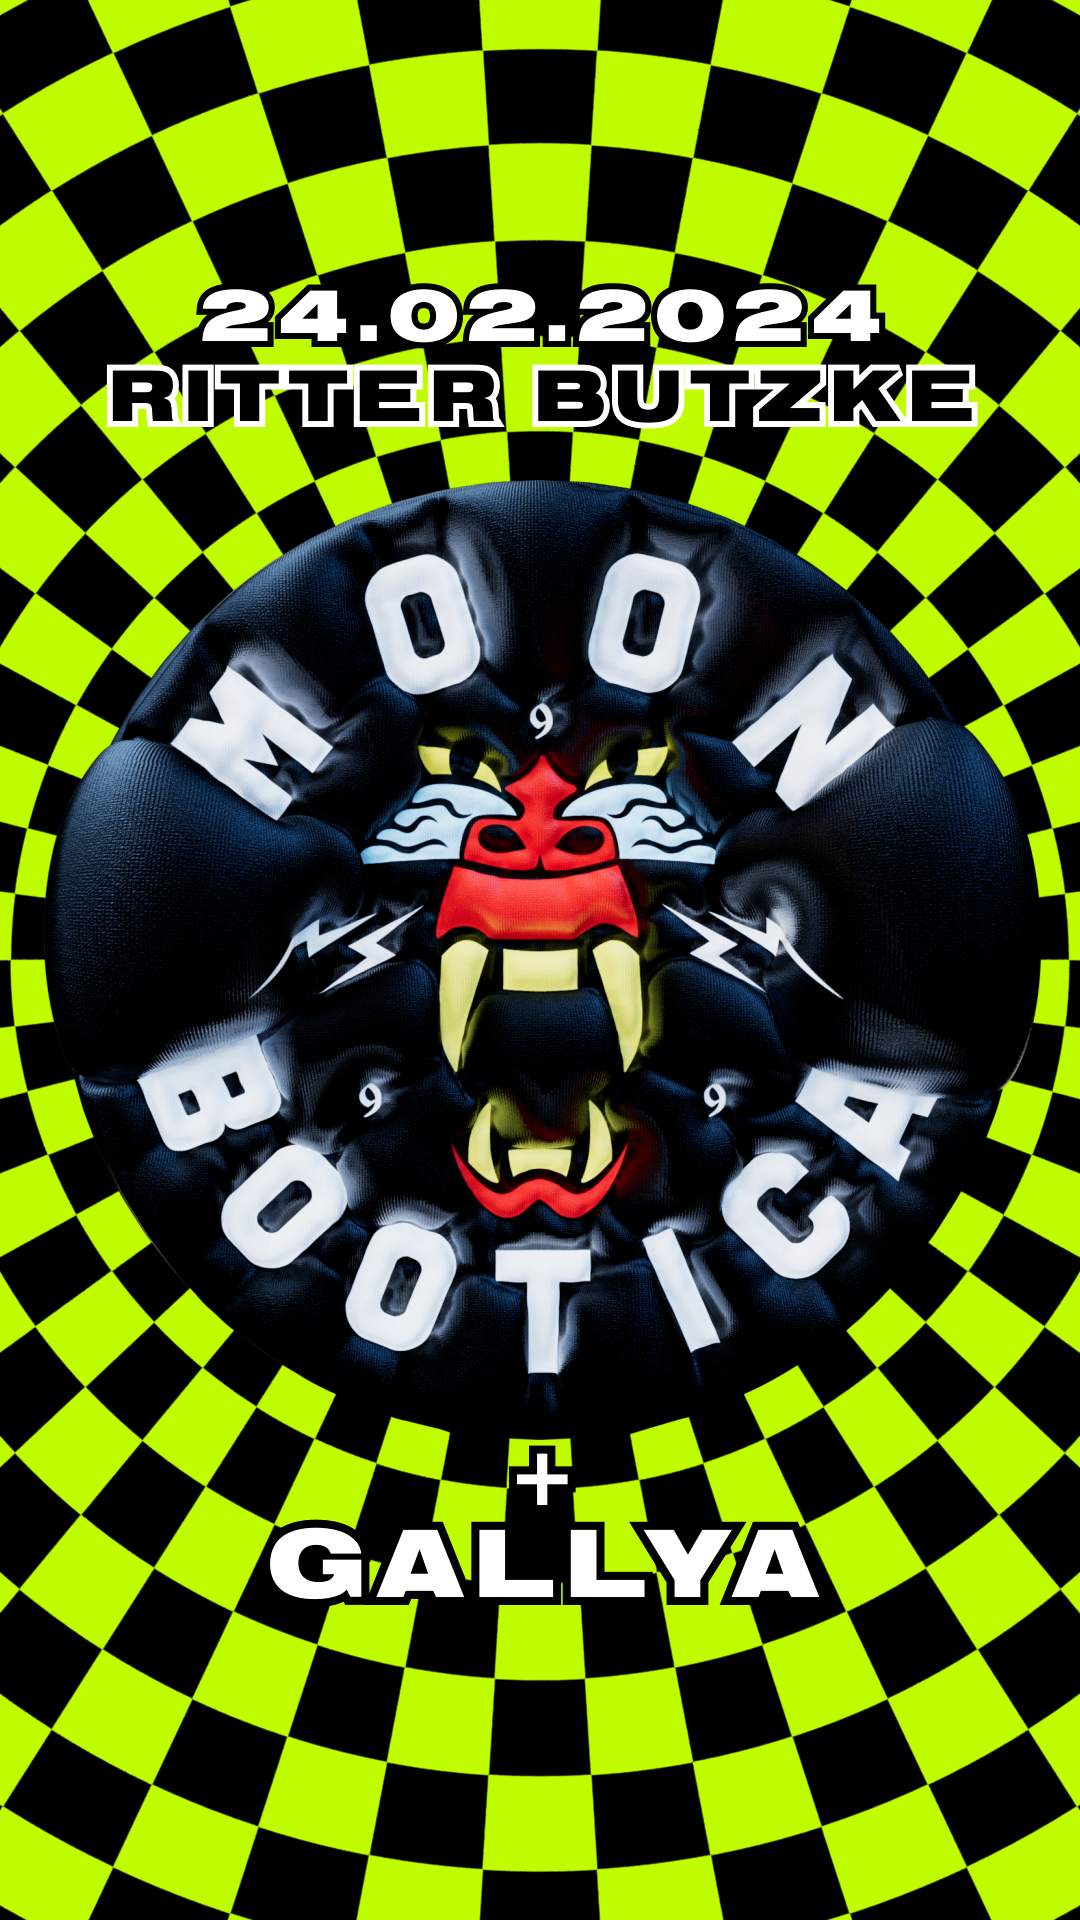 Moonbootica - フライヤー裏